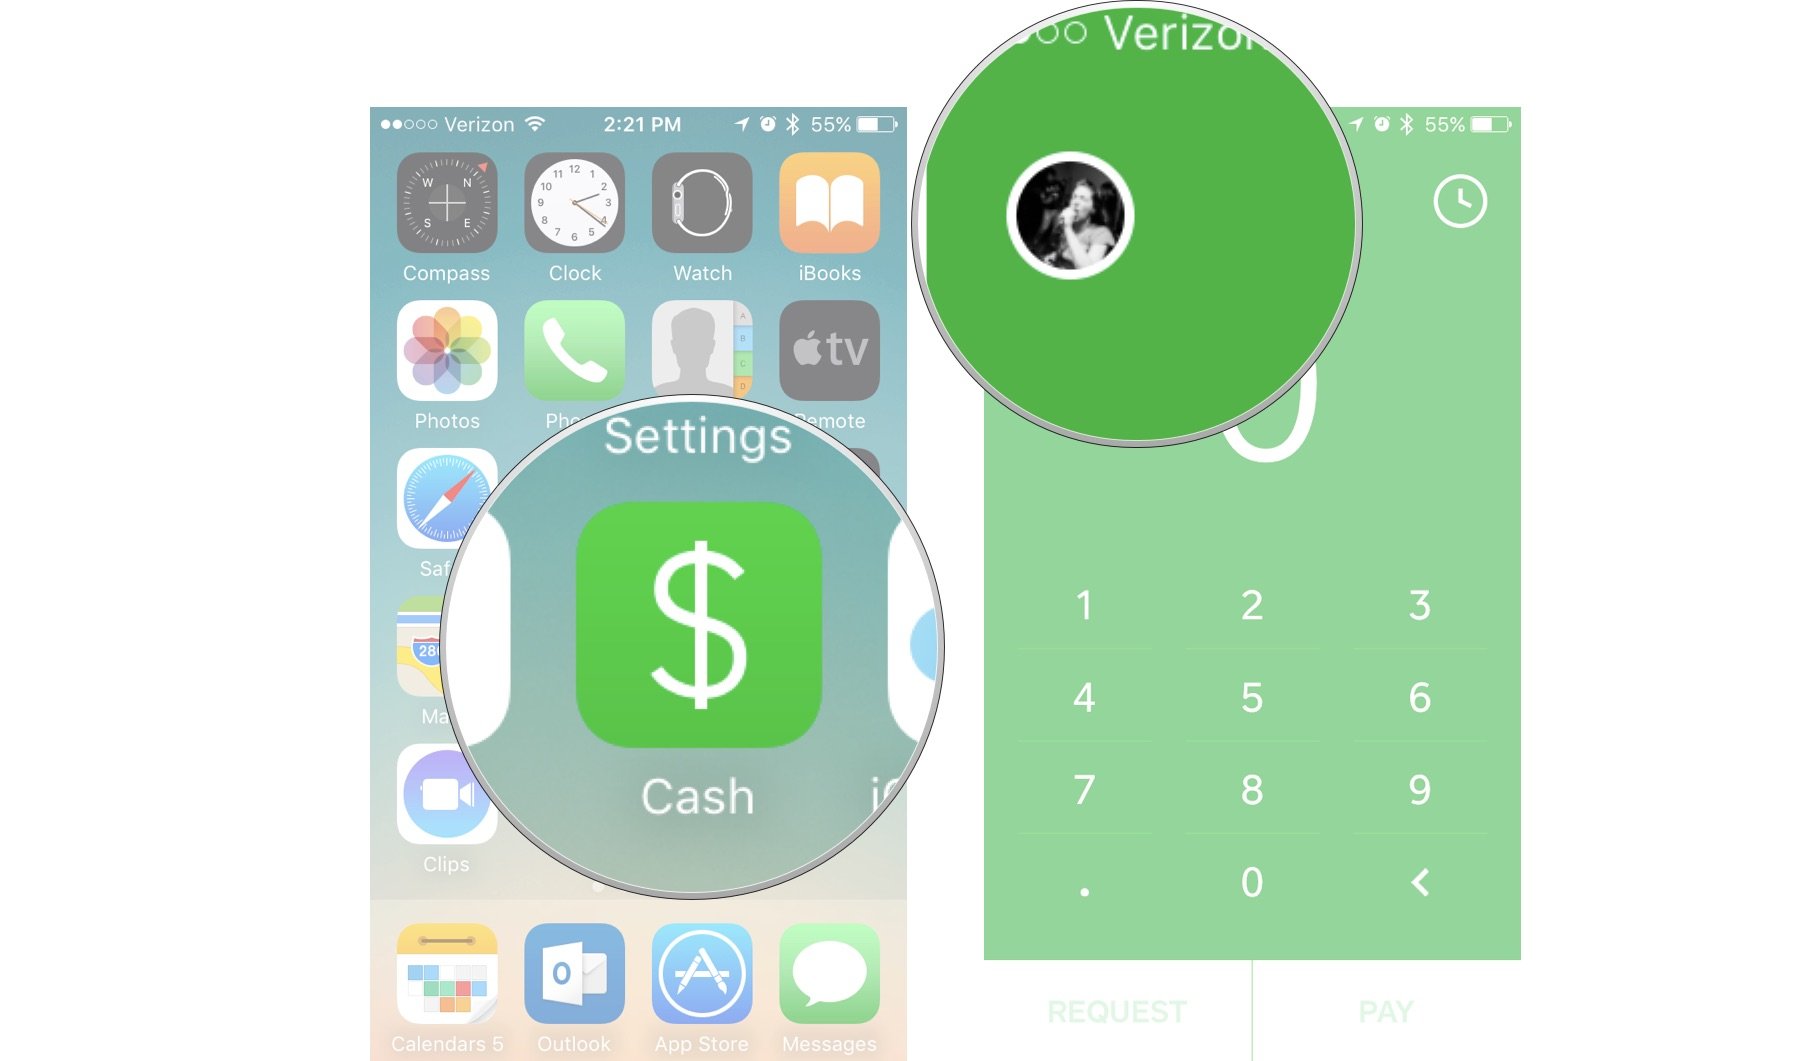 Launch Square Cash app, select your profile